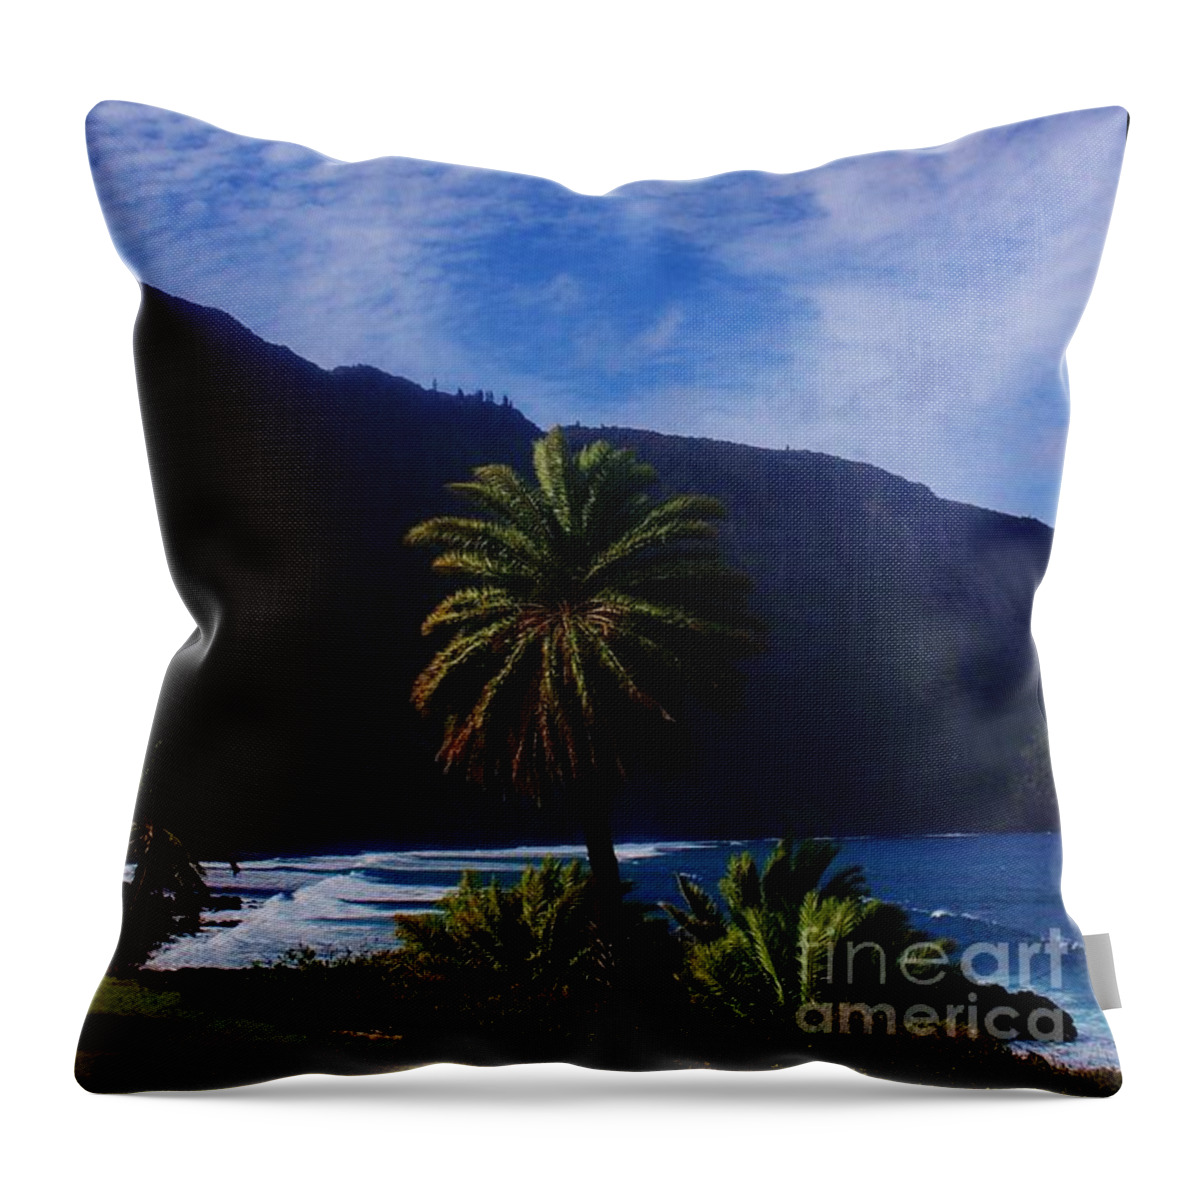 Kalaupapa Throw Pillow featuring the photograph Splendor of Kalaupapa by Craig Wood